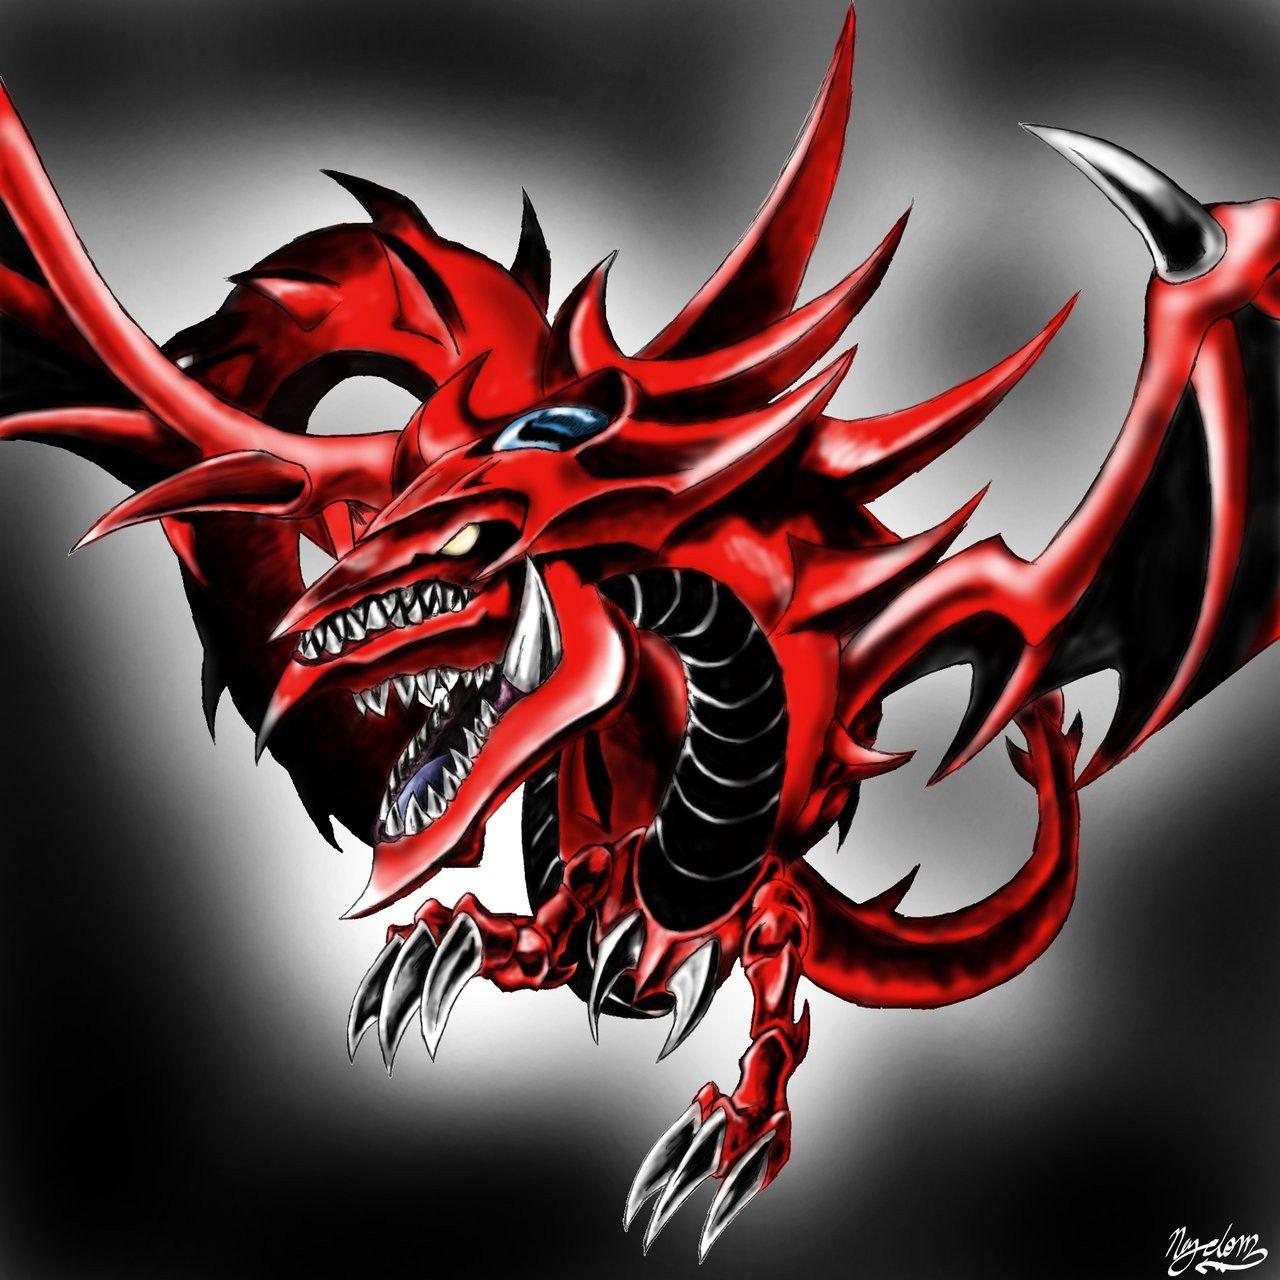 Wallpaper, illustration, demon, Yu Gi Oh, Slifer the sky dragon